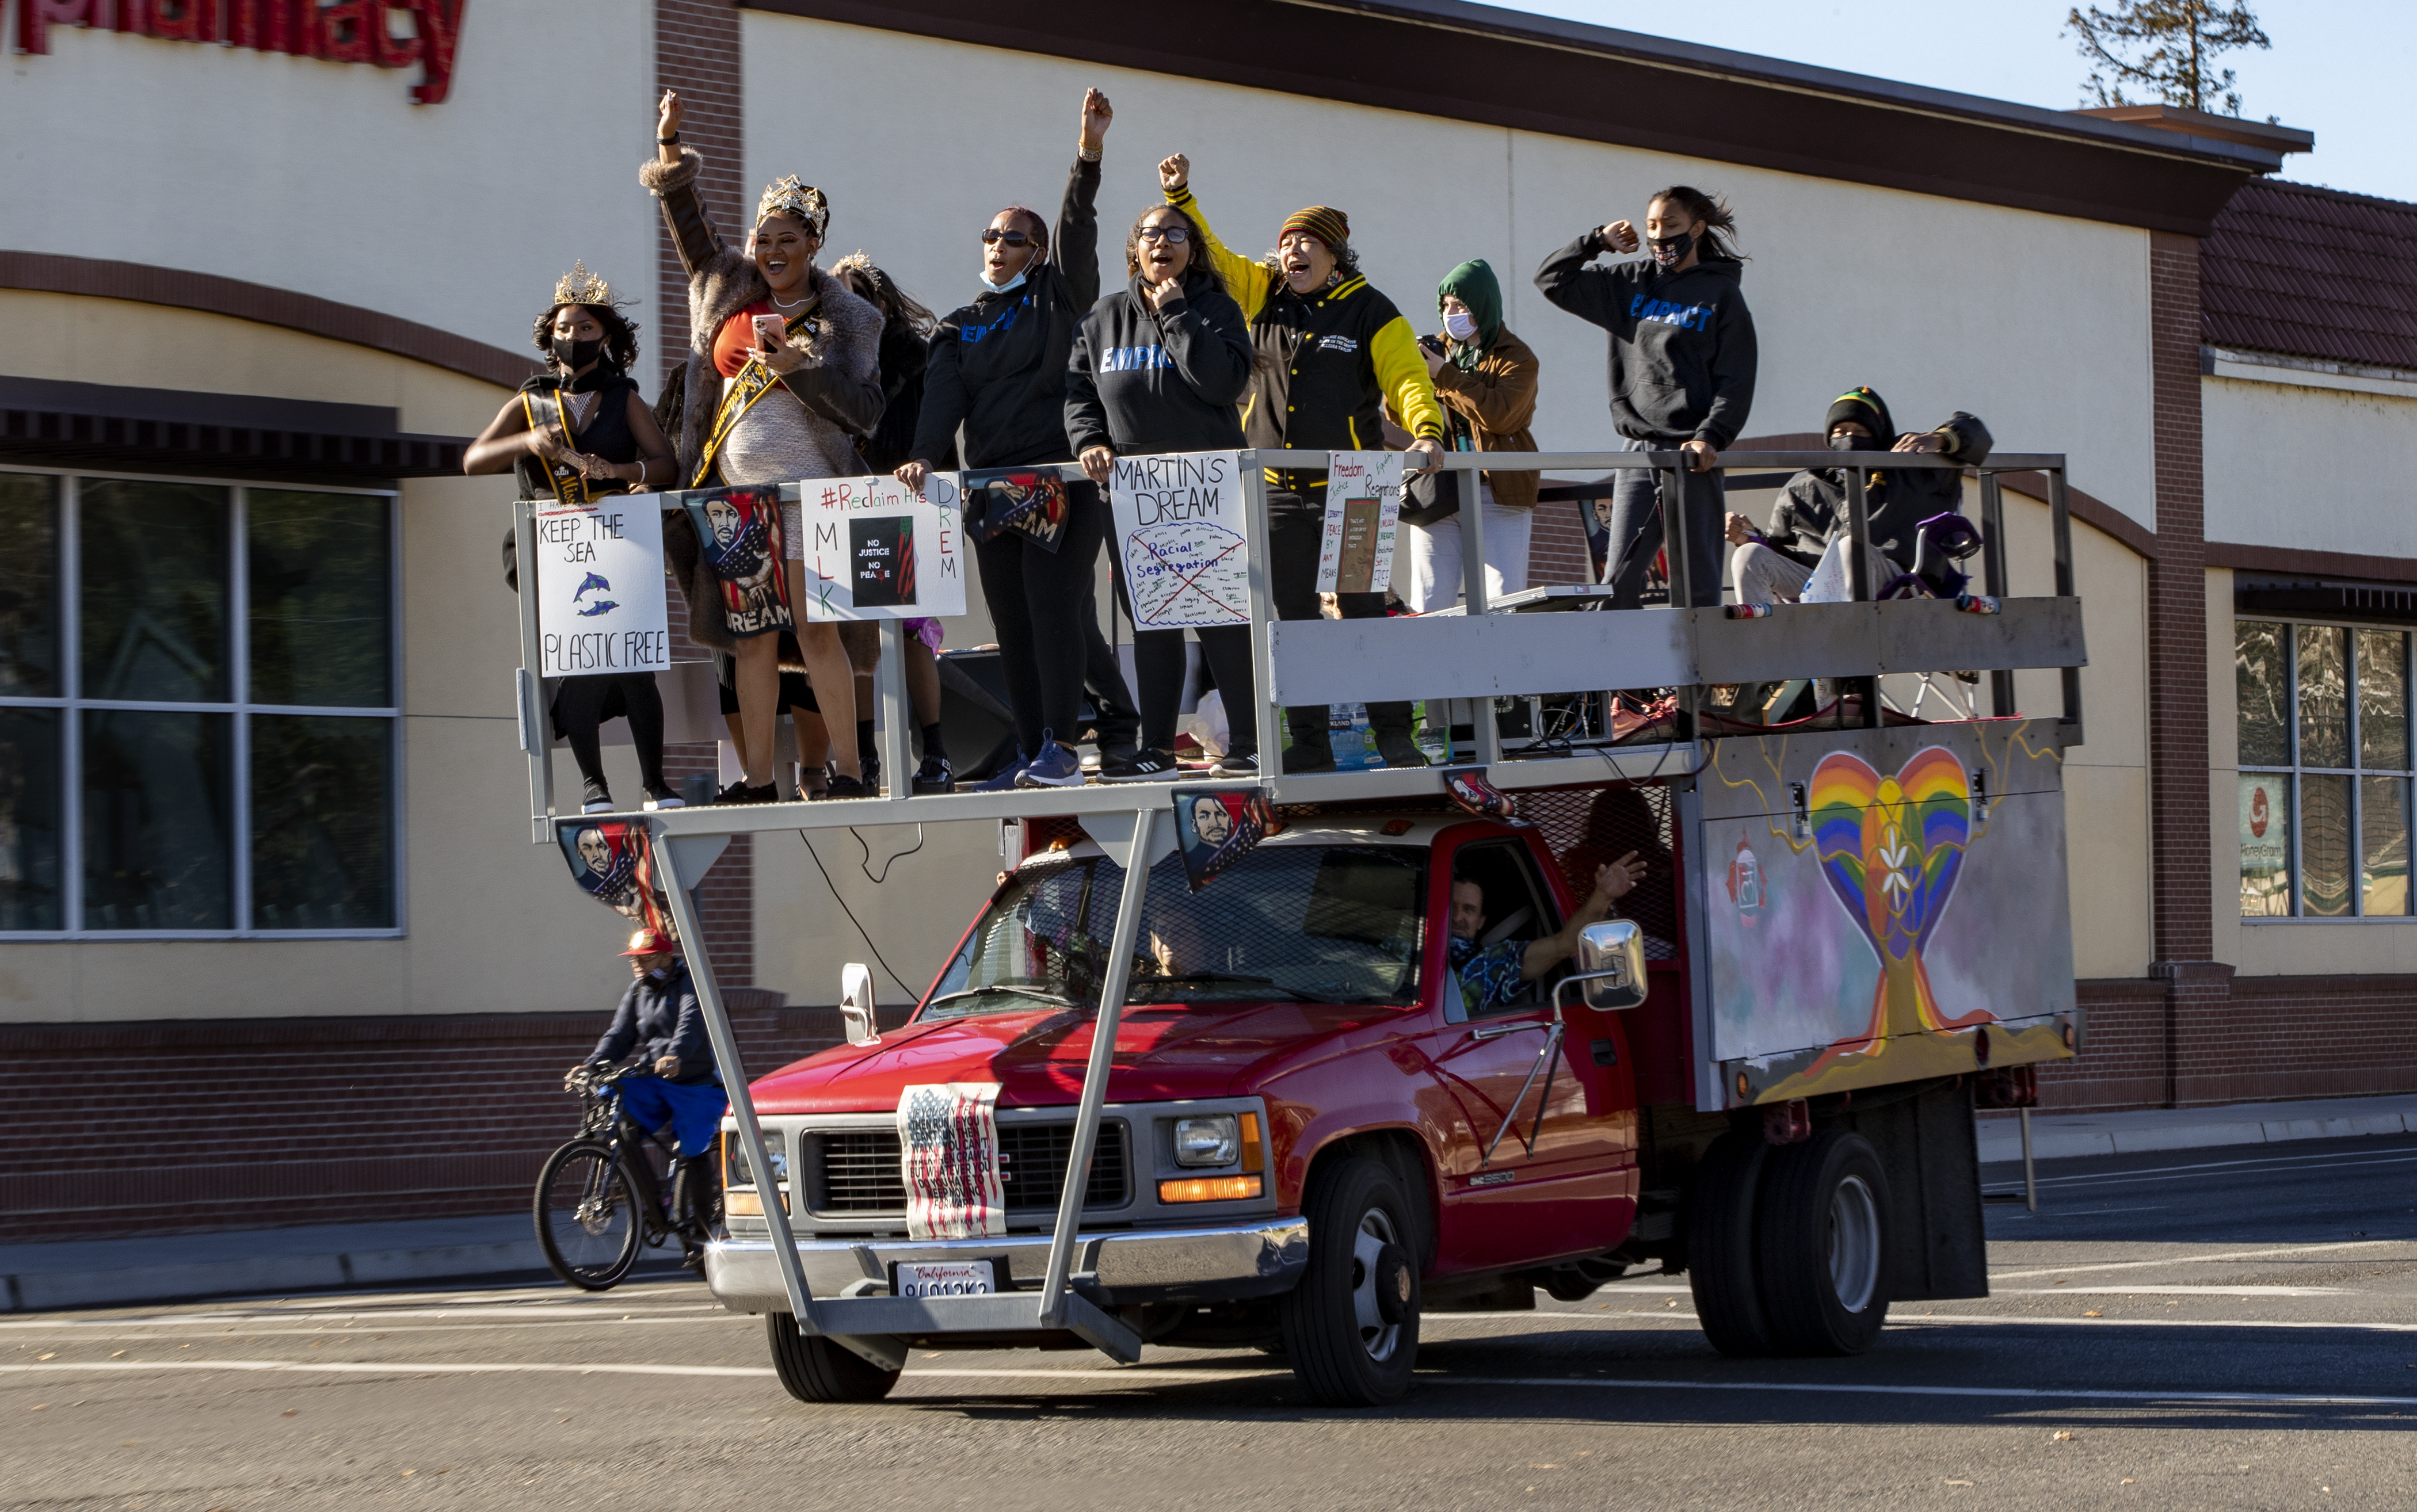 Car Caravan & Parade Honors MLK Monday In Sacramento